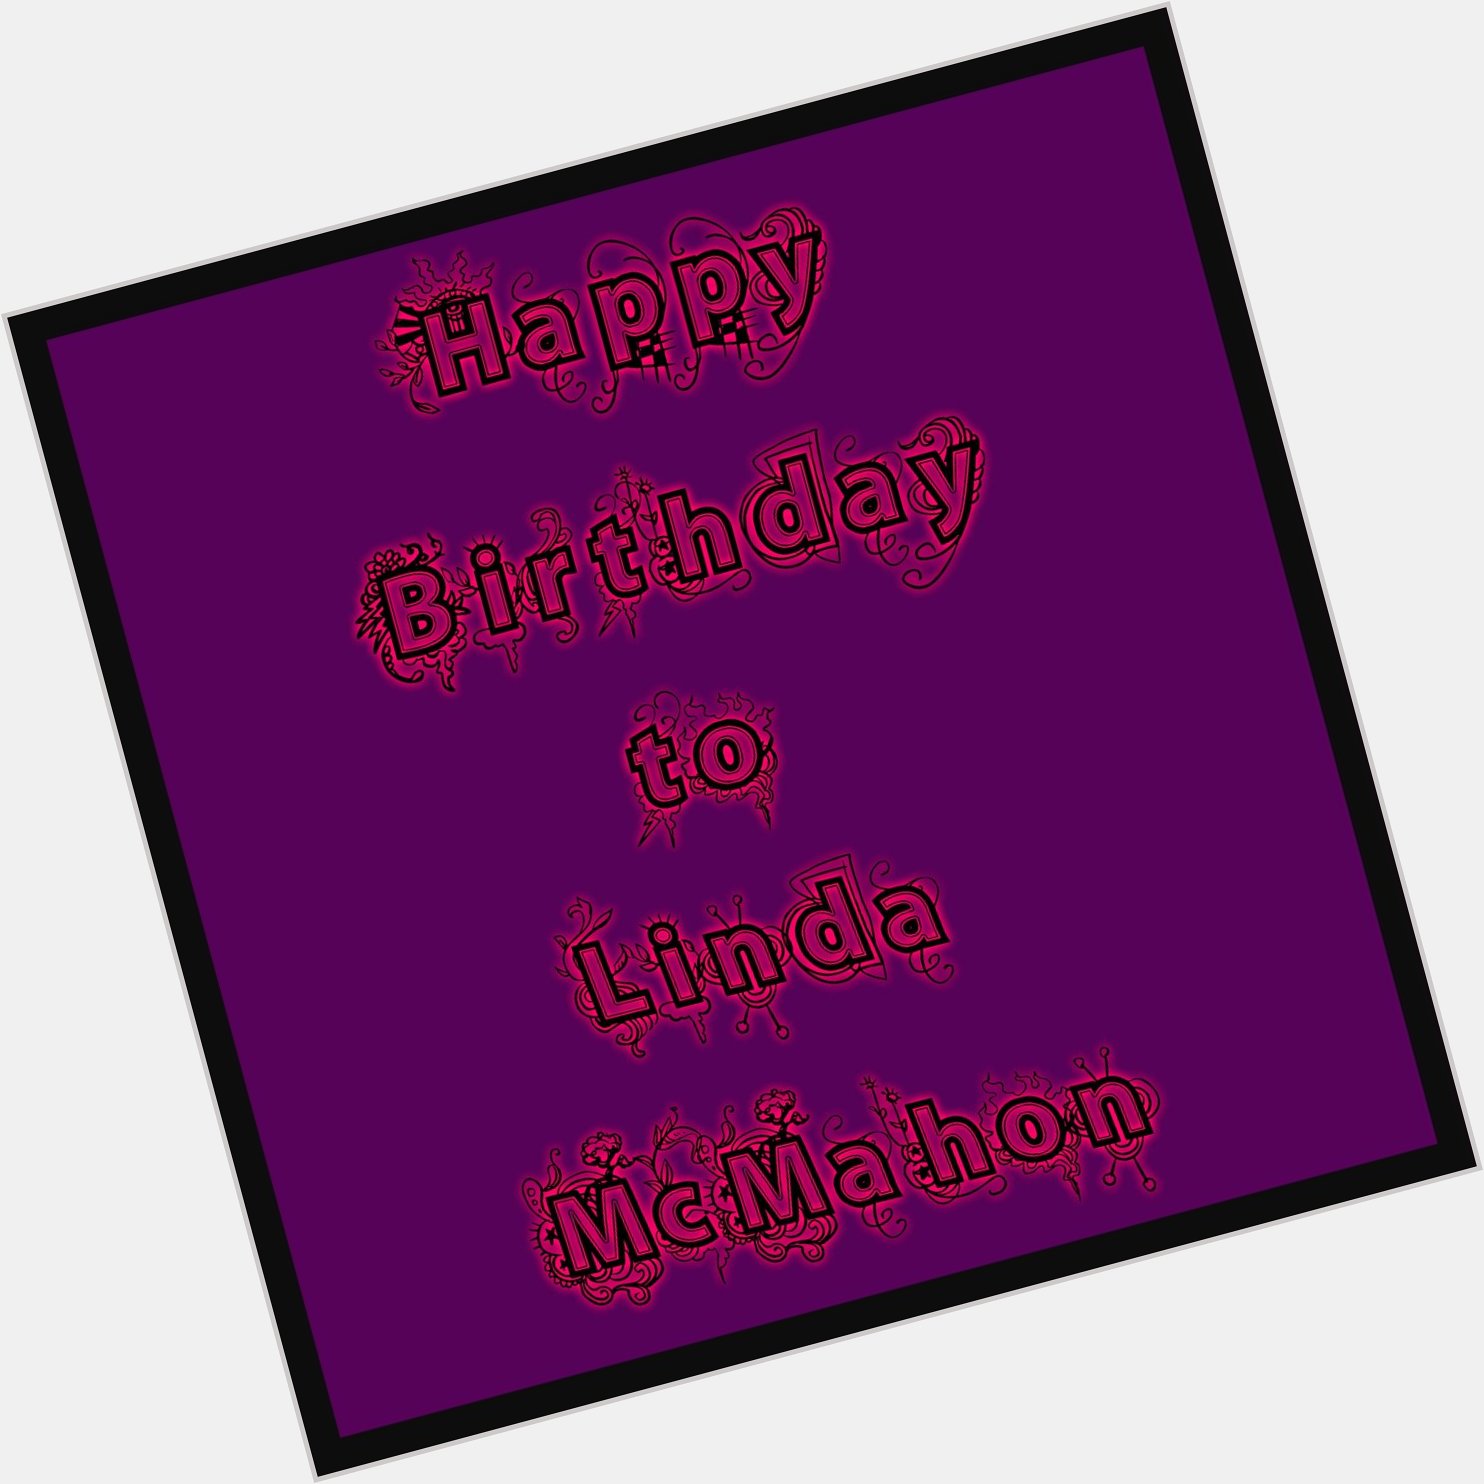 I want to say happy birthday to Linda McMahon. 